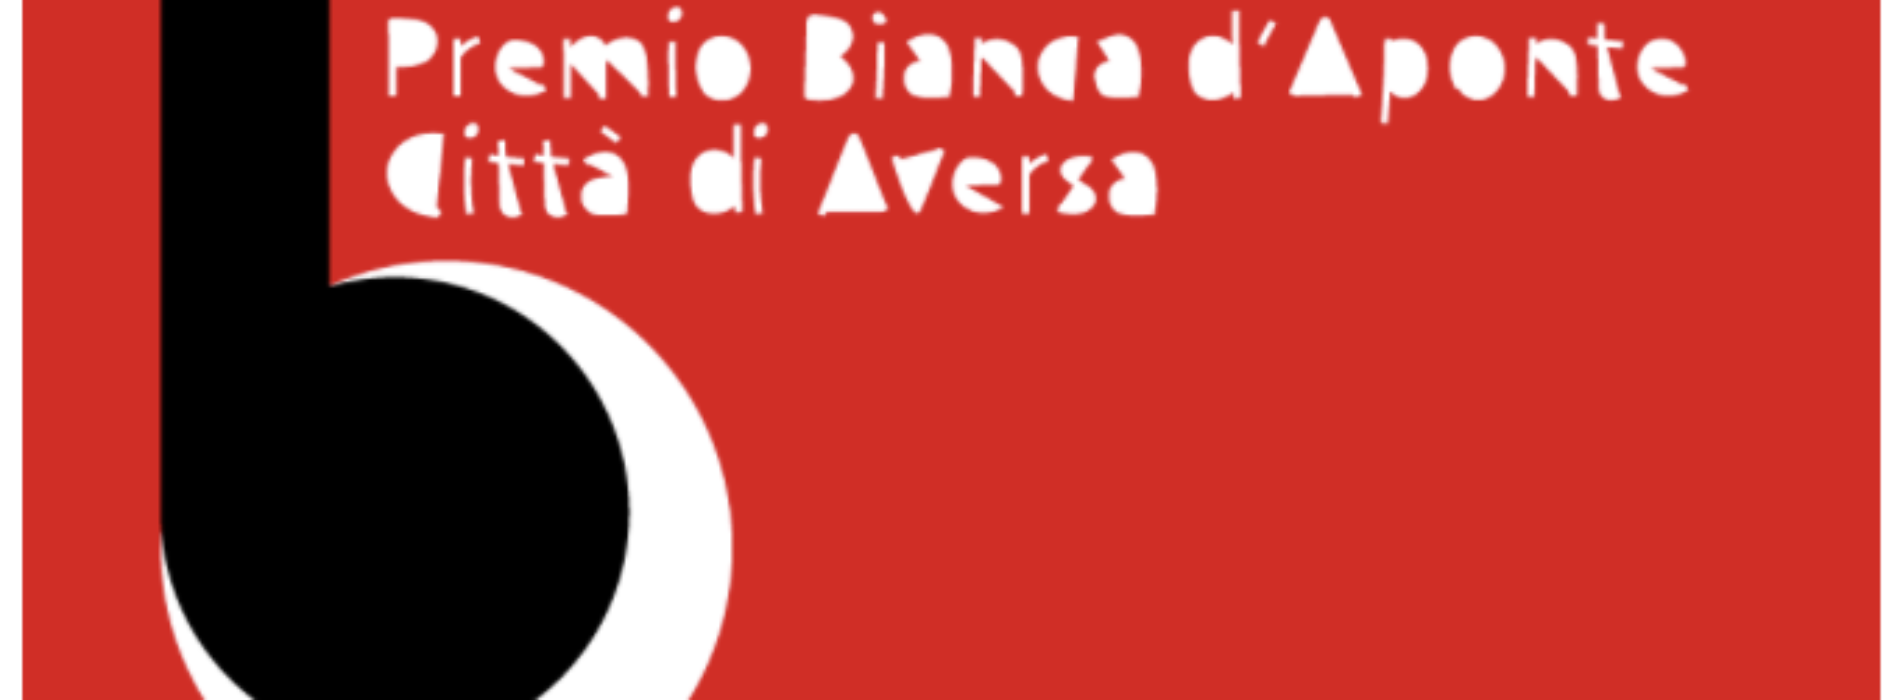 Premio Bianca d’Aponte, online il bando per la nuova edizione